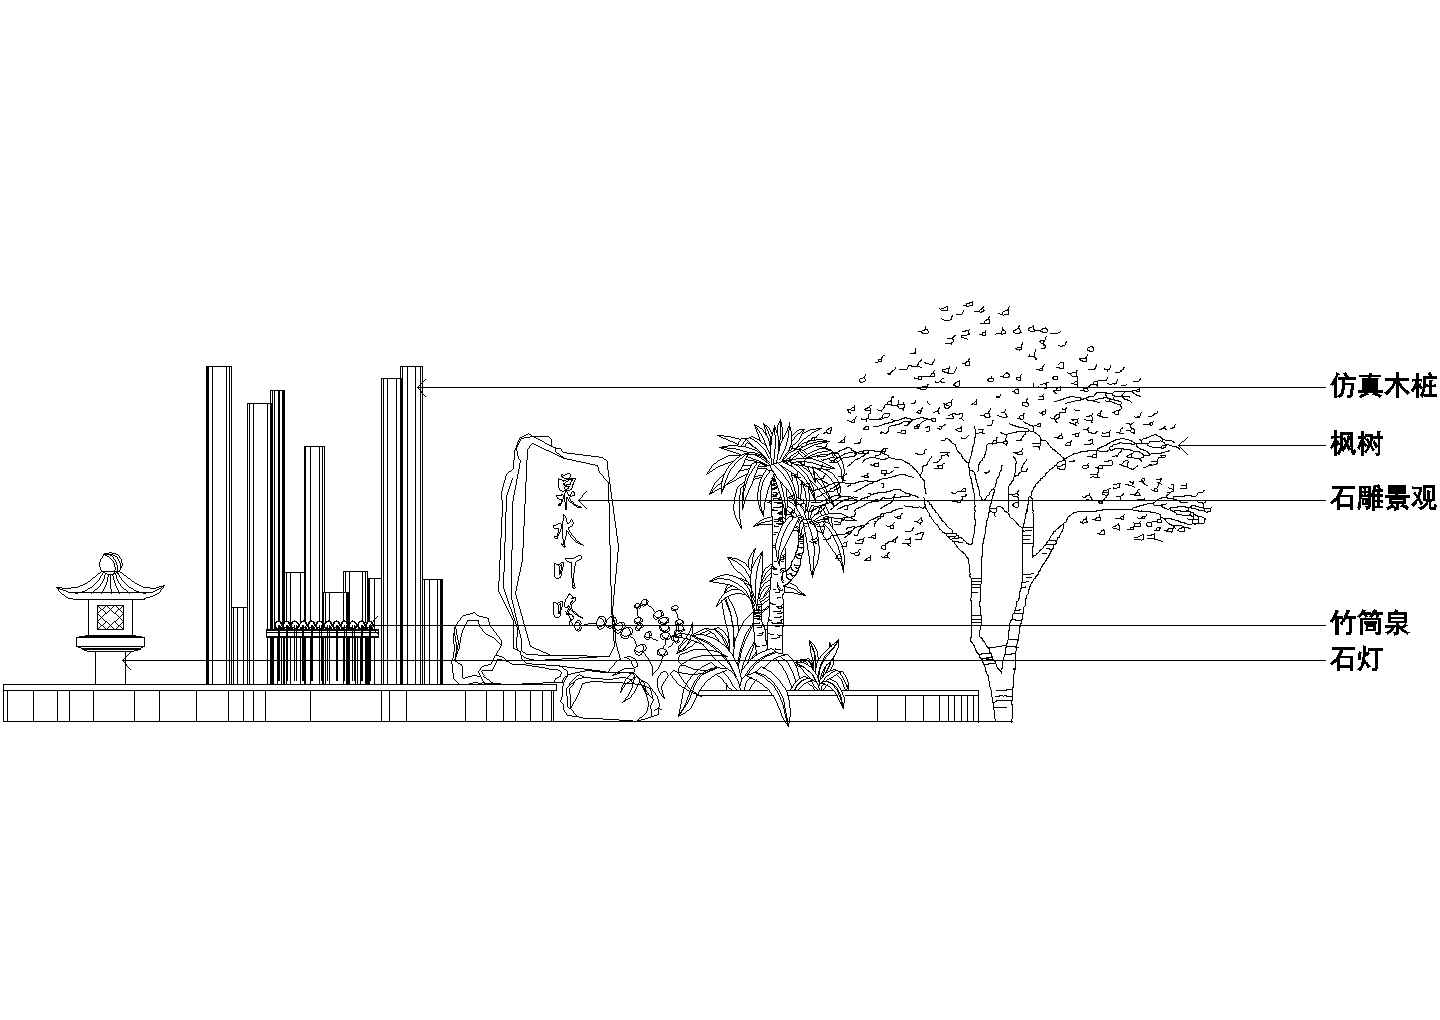 某办公写字建筑空中花园小庭院景观设计施工CAD图纸